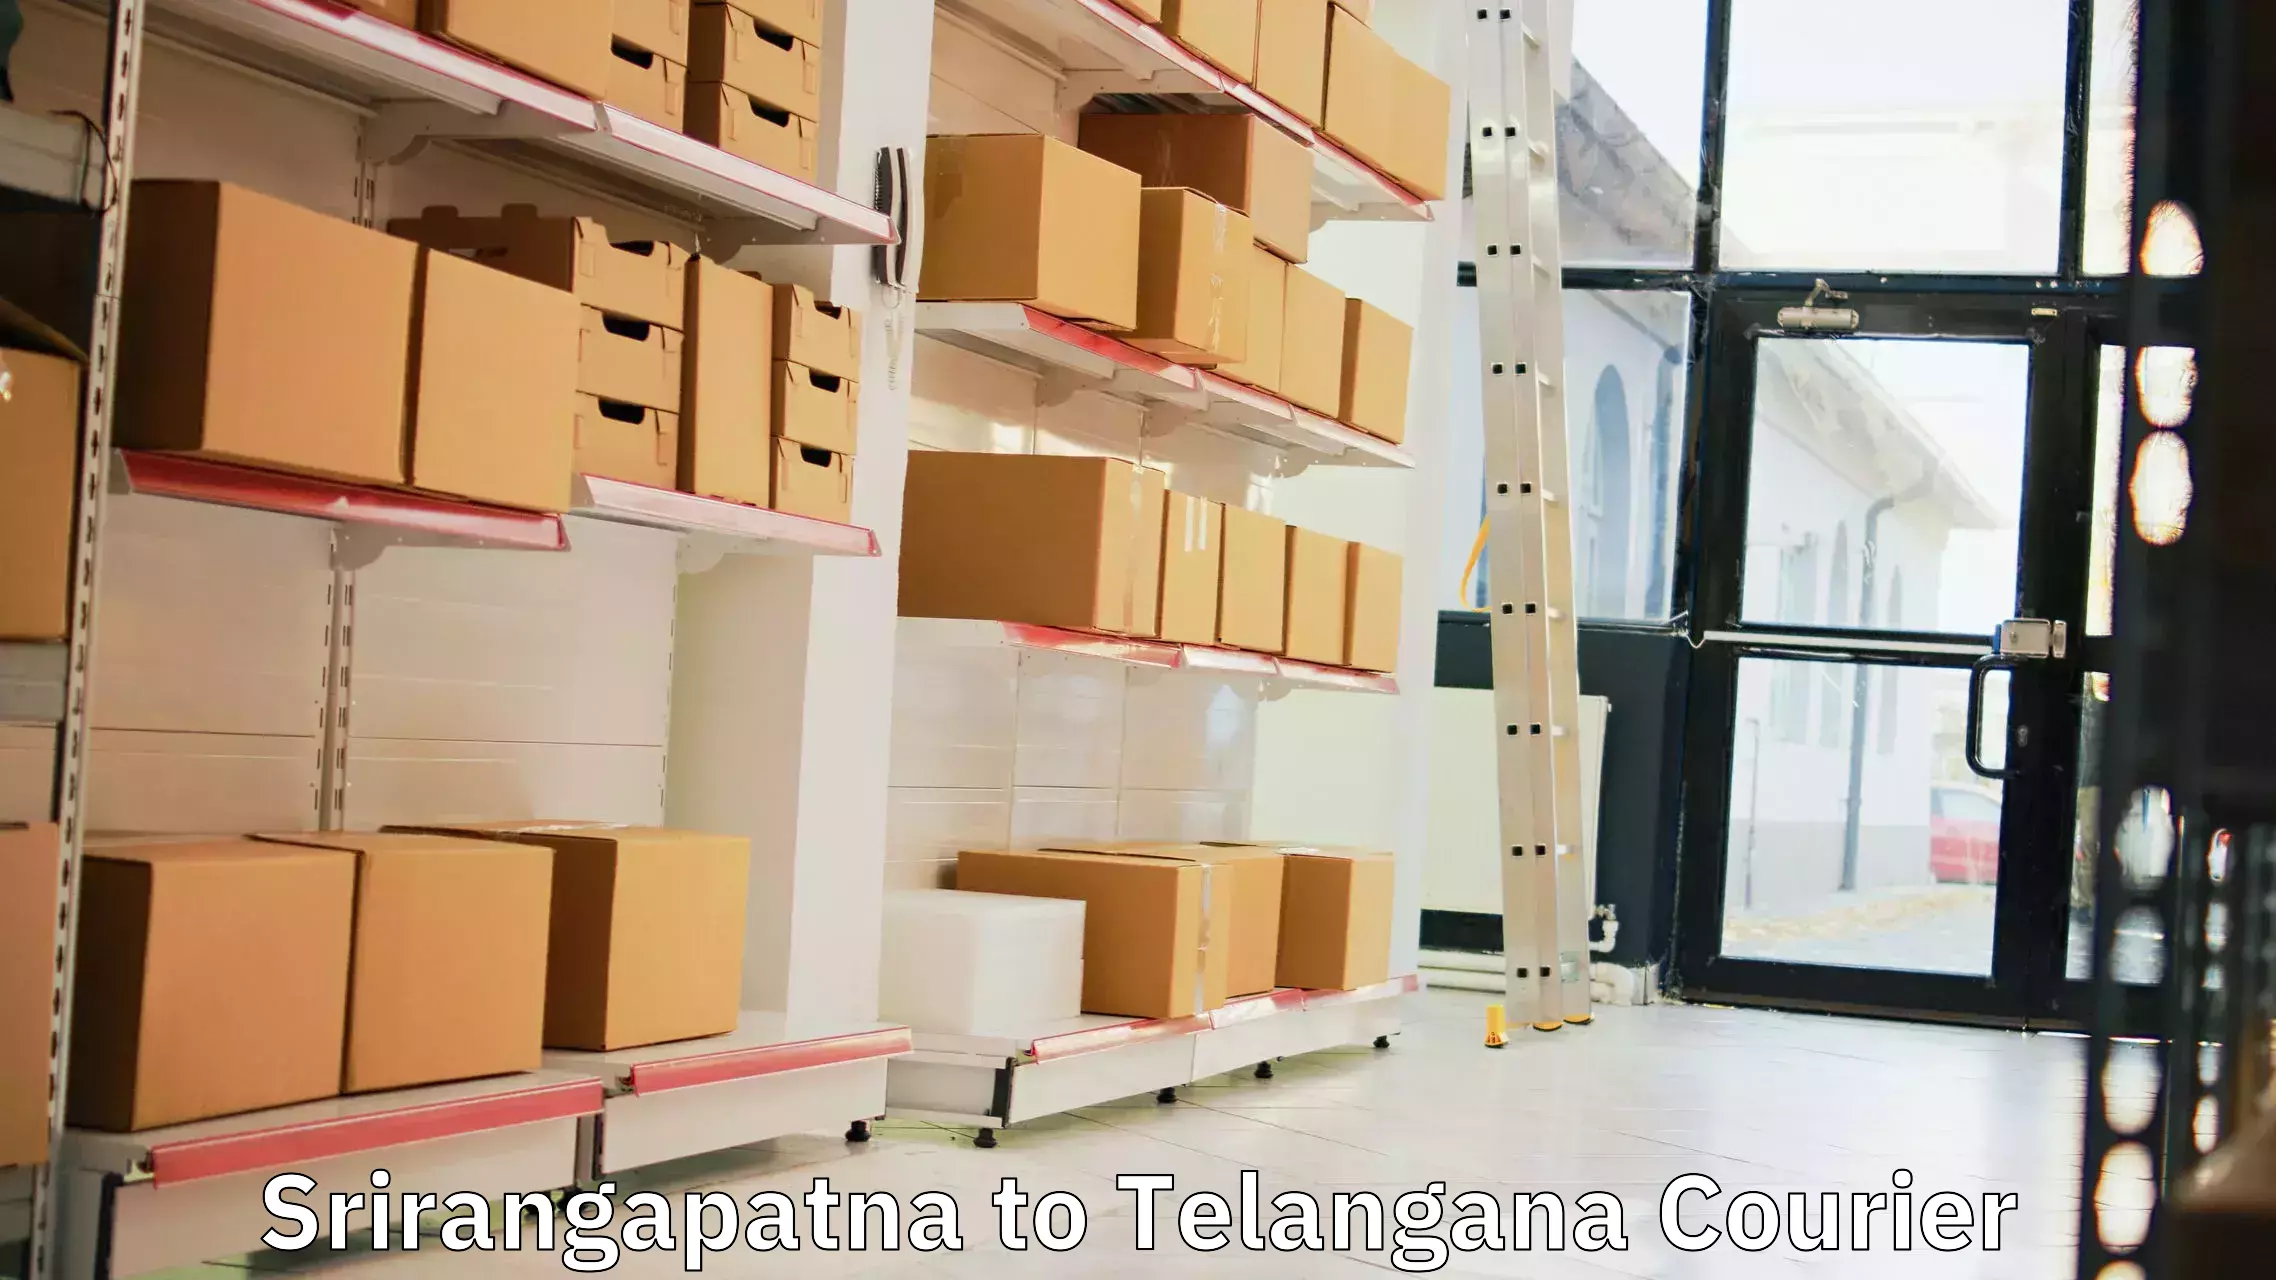 Reliable courier service Srirangapatna to Bellampalli